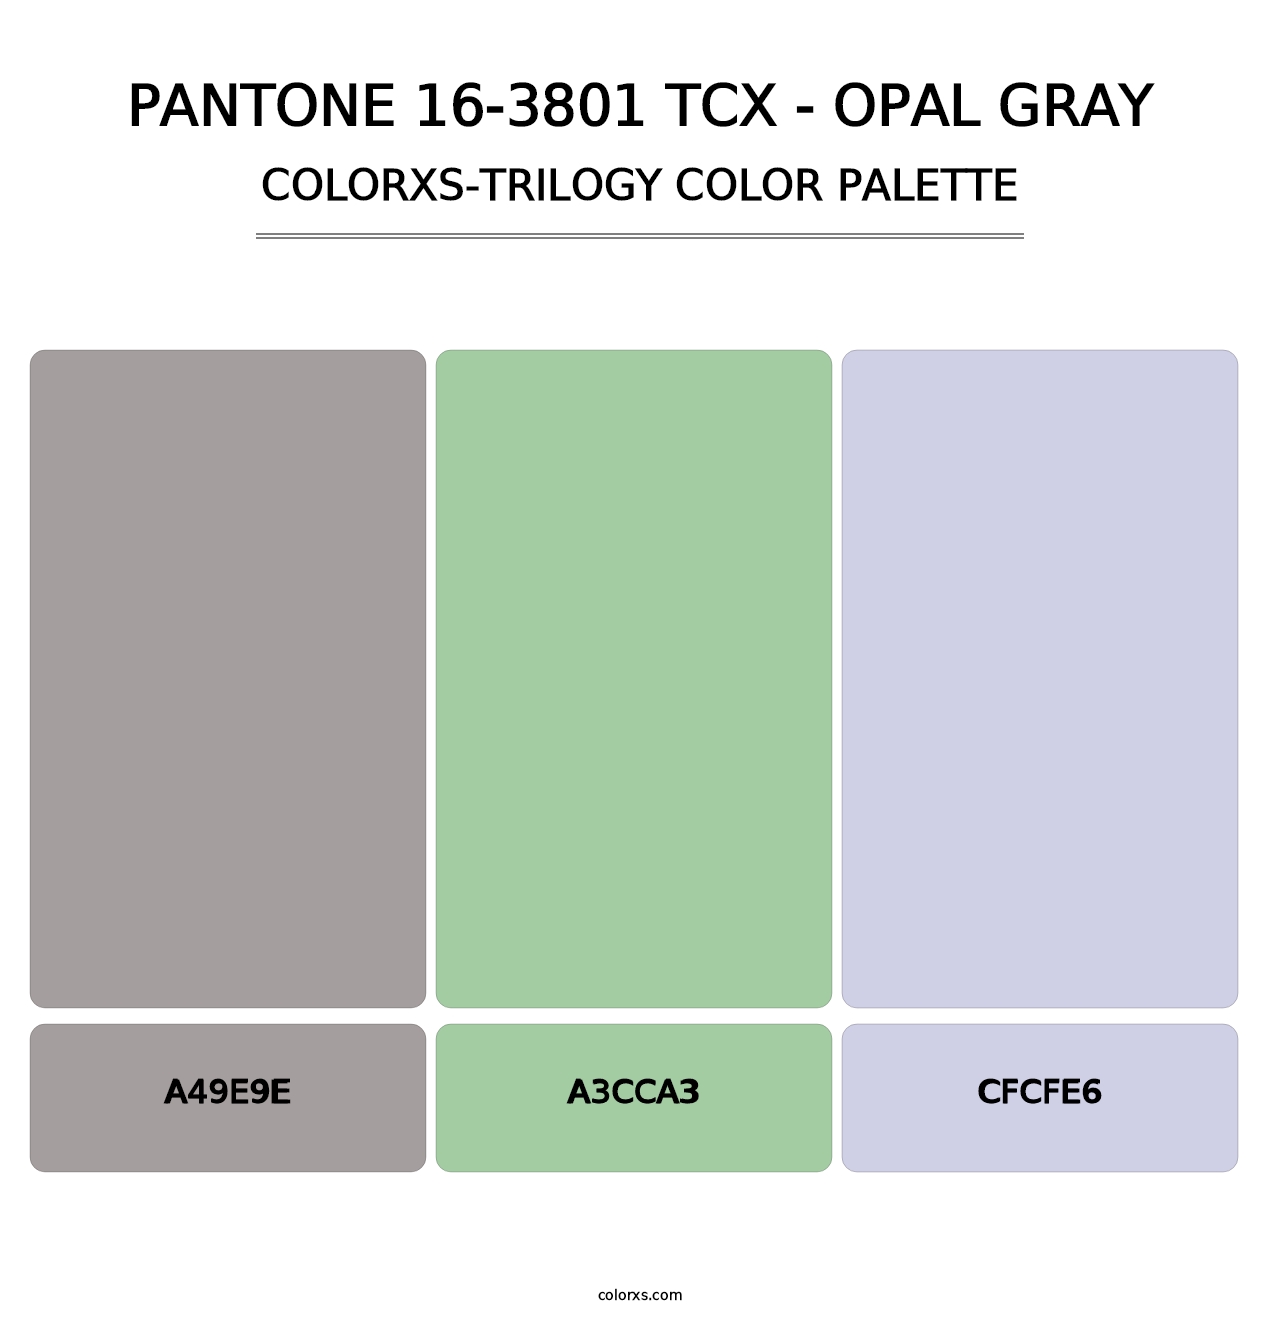 PANTONE 16-3801 TCX - Opal Gray - Colorxs Trilogy Palette